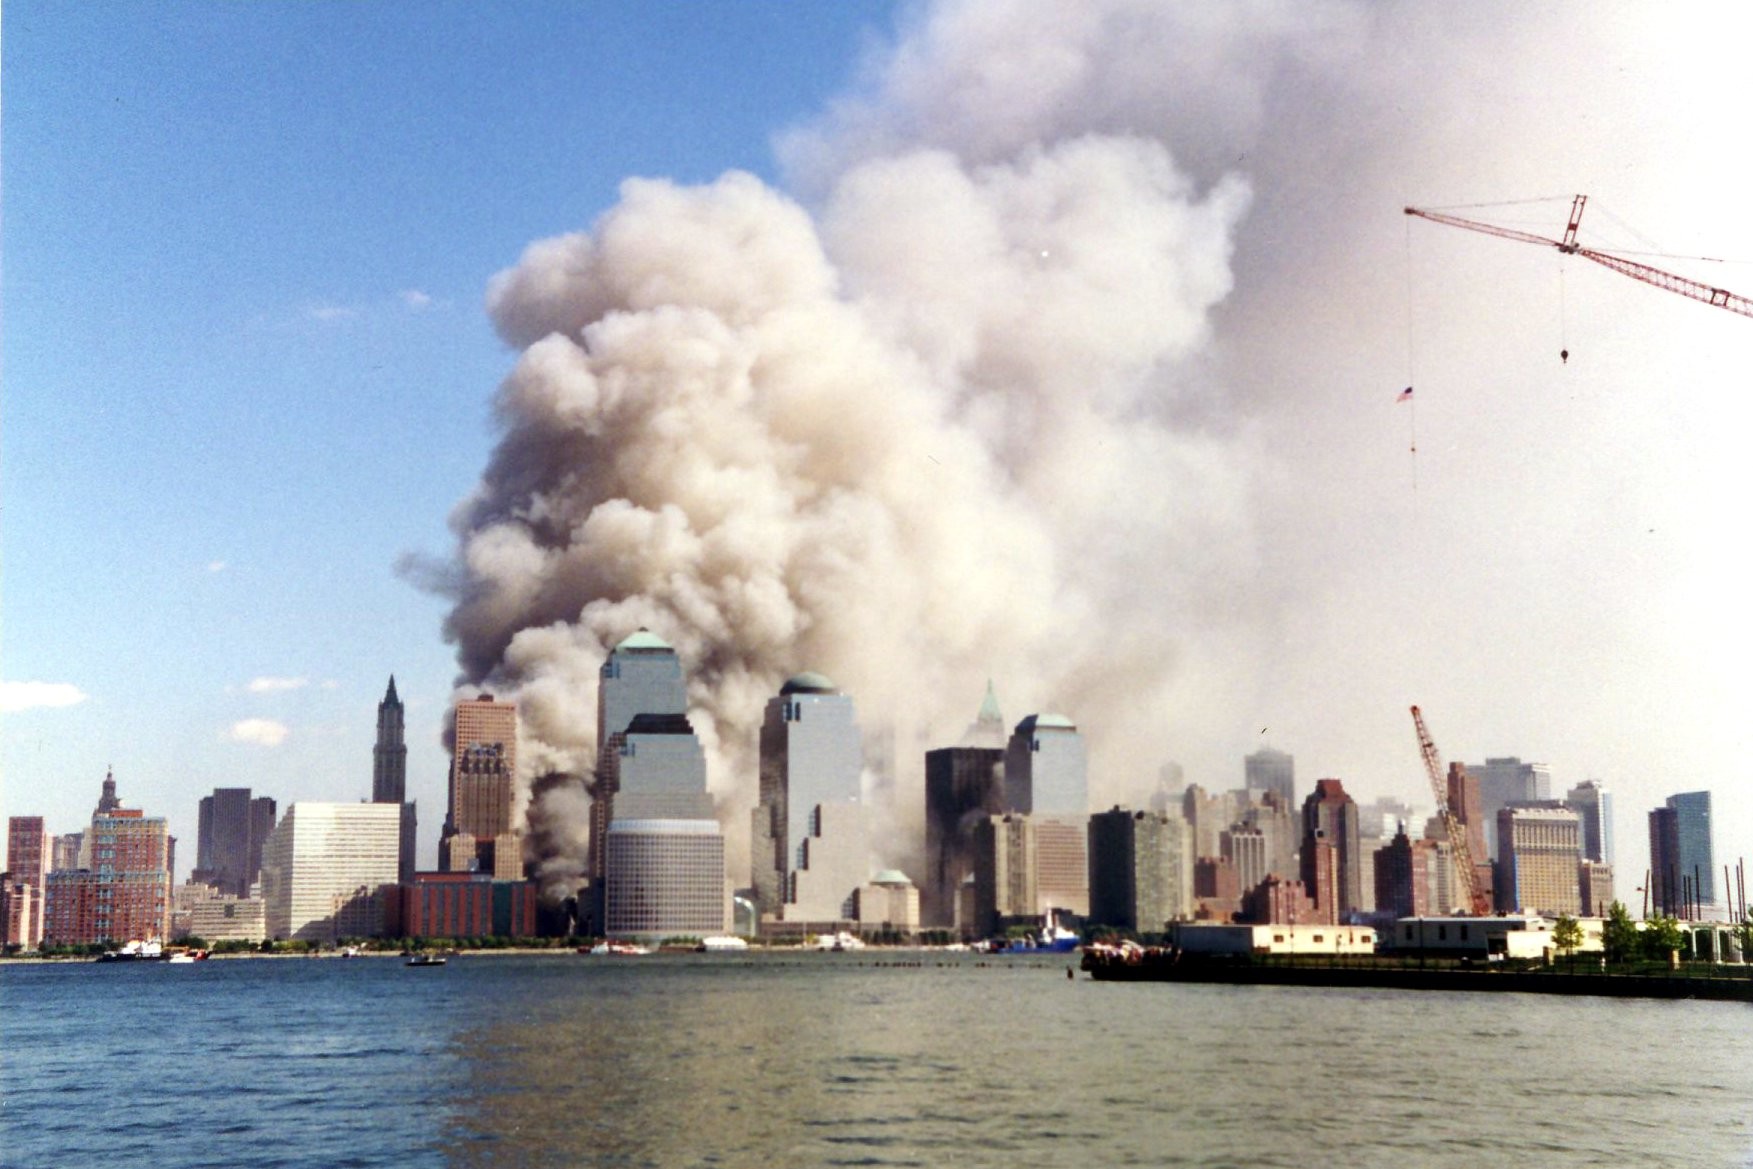 Ataque às Torres Gêmeas em Nova York em 11 de setembro de 2001 (Foto: Wally Gobetz/Flickr)